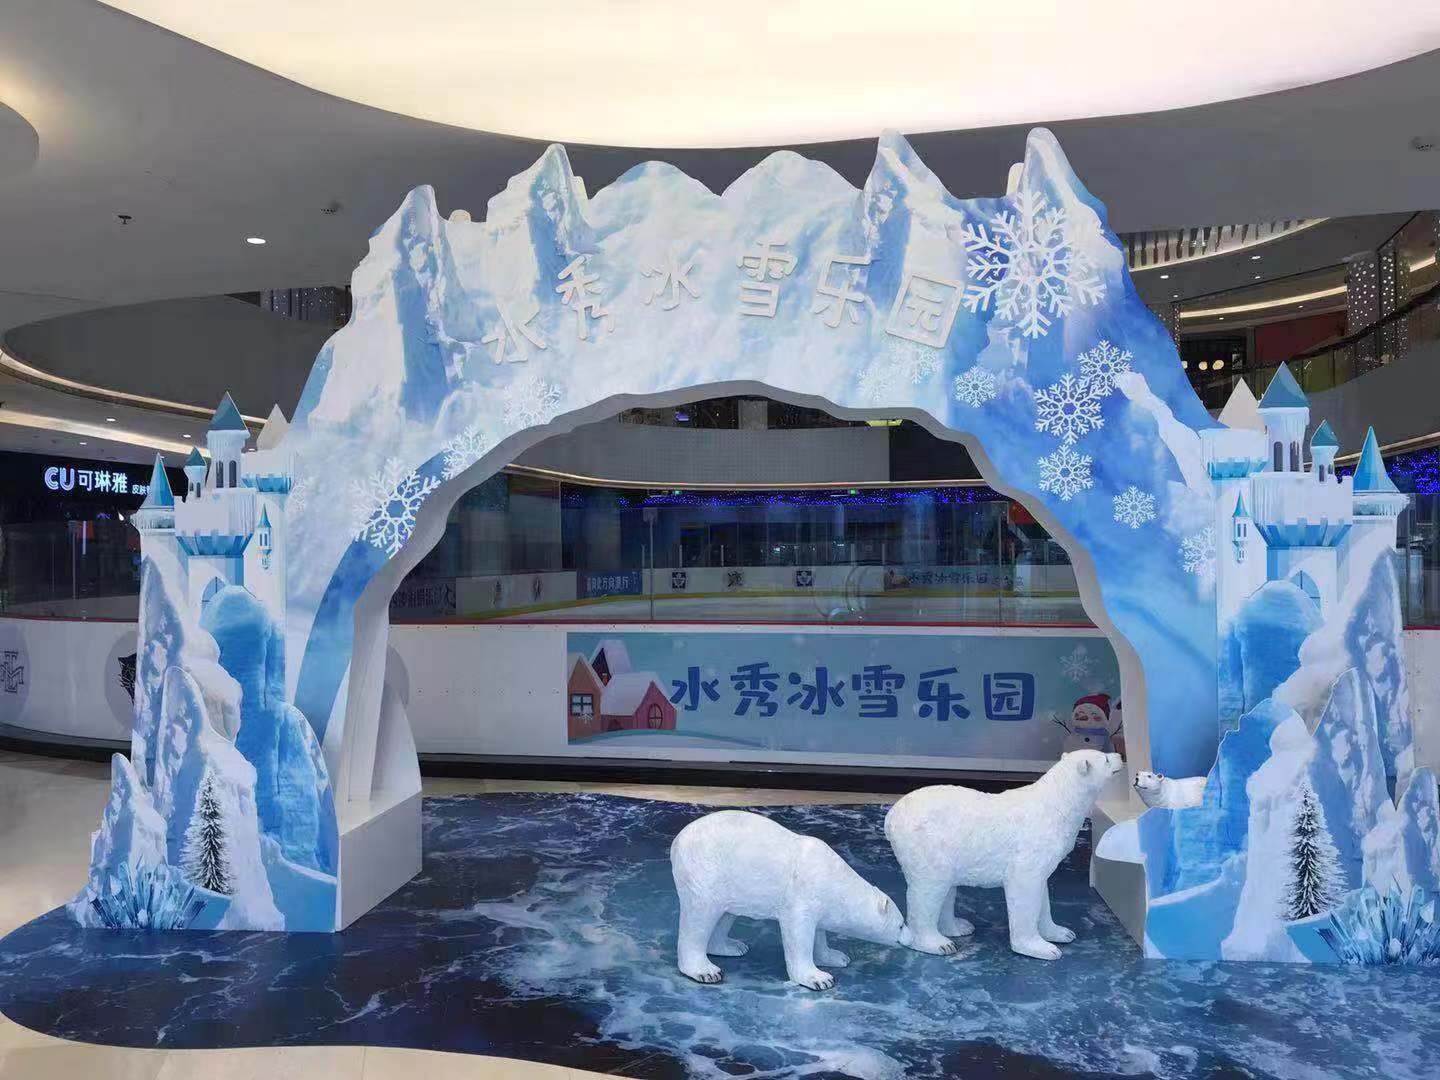 吴江水秀冰雪乐园